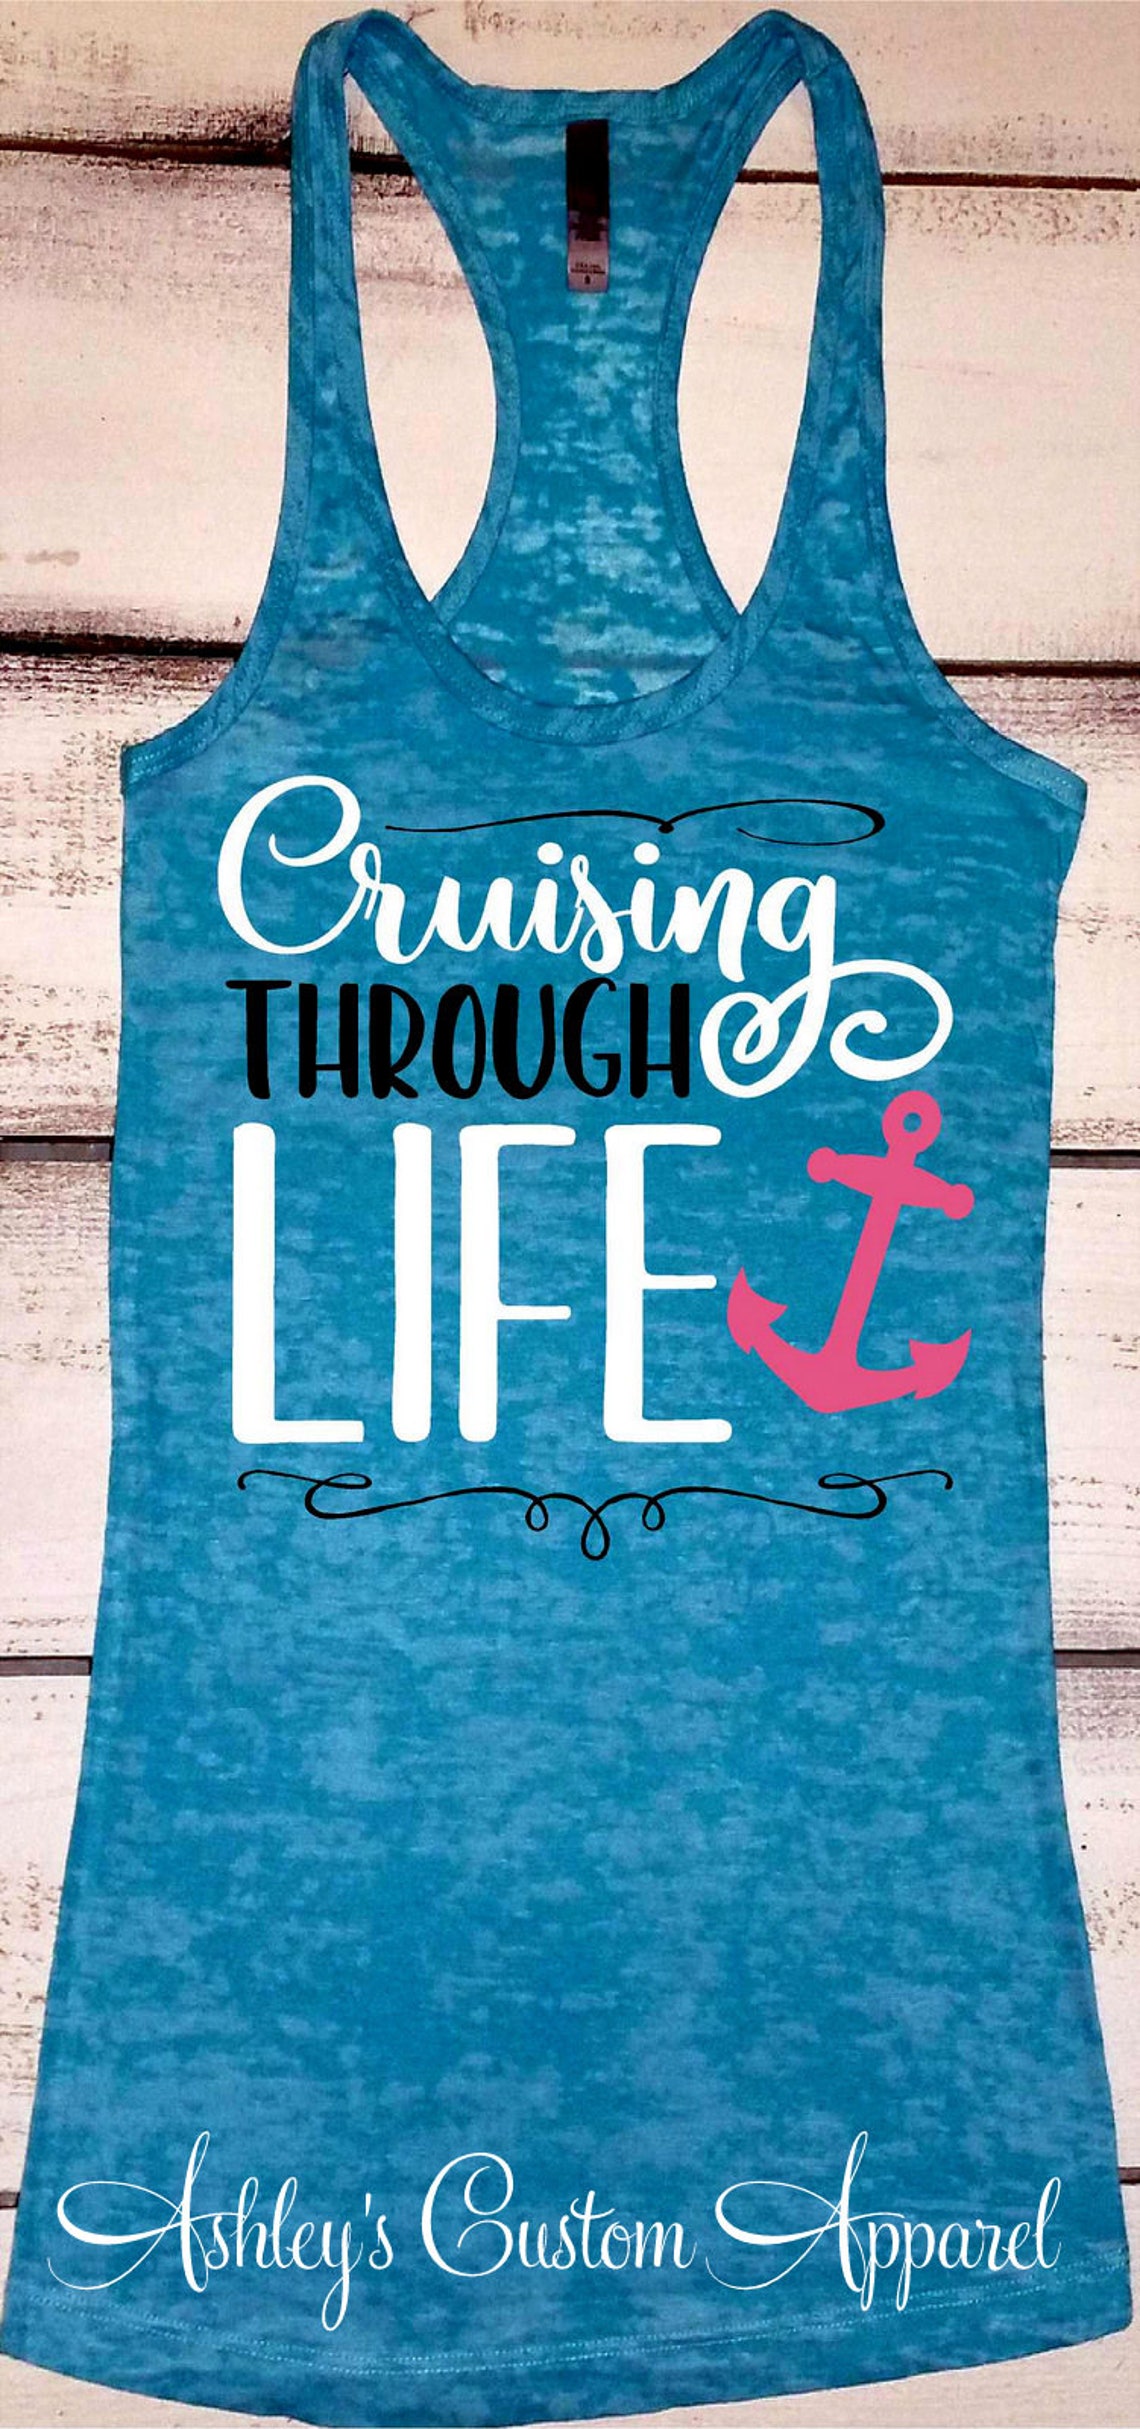 Cruise Shirts Funny Cruise Drinking Shirt Cruising Through - Etsy